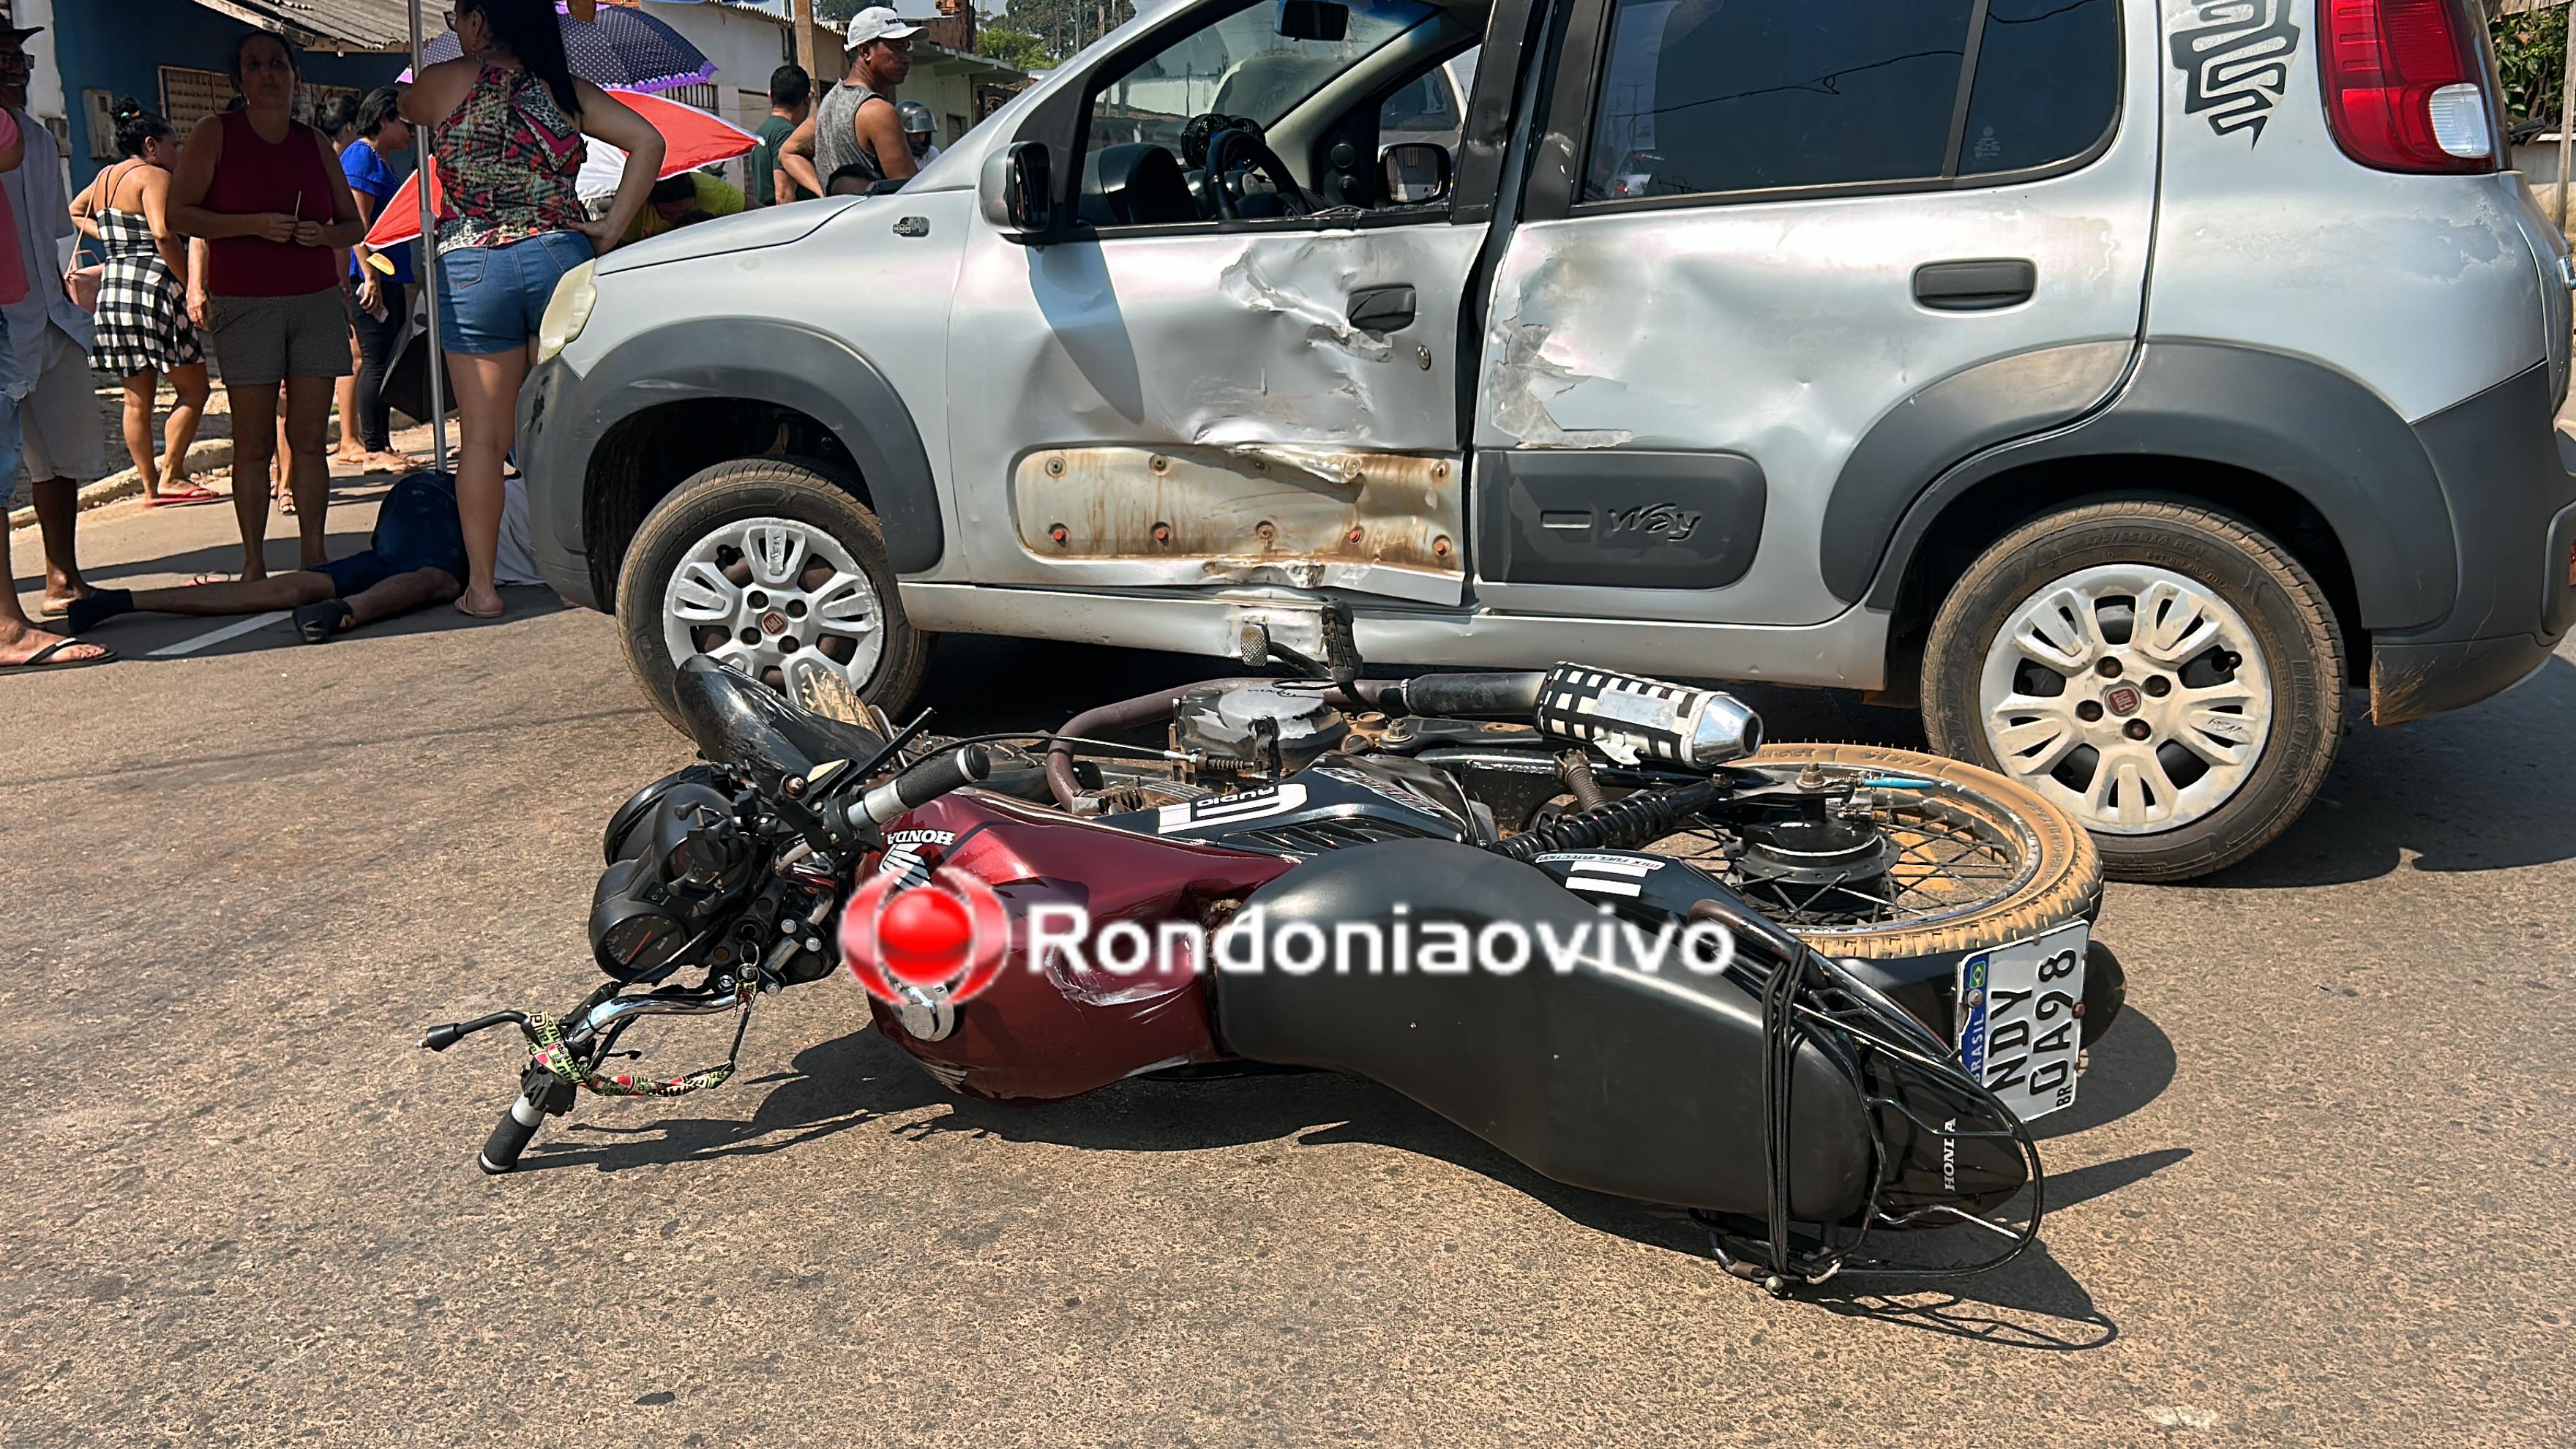 VÍDEO: Casal em moto sofre gravíssimo acidente na Estrada dos Periquitos